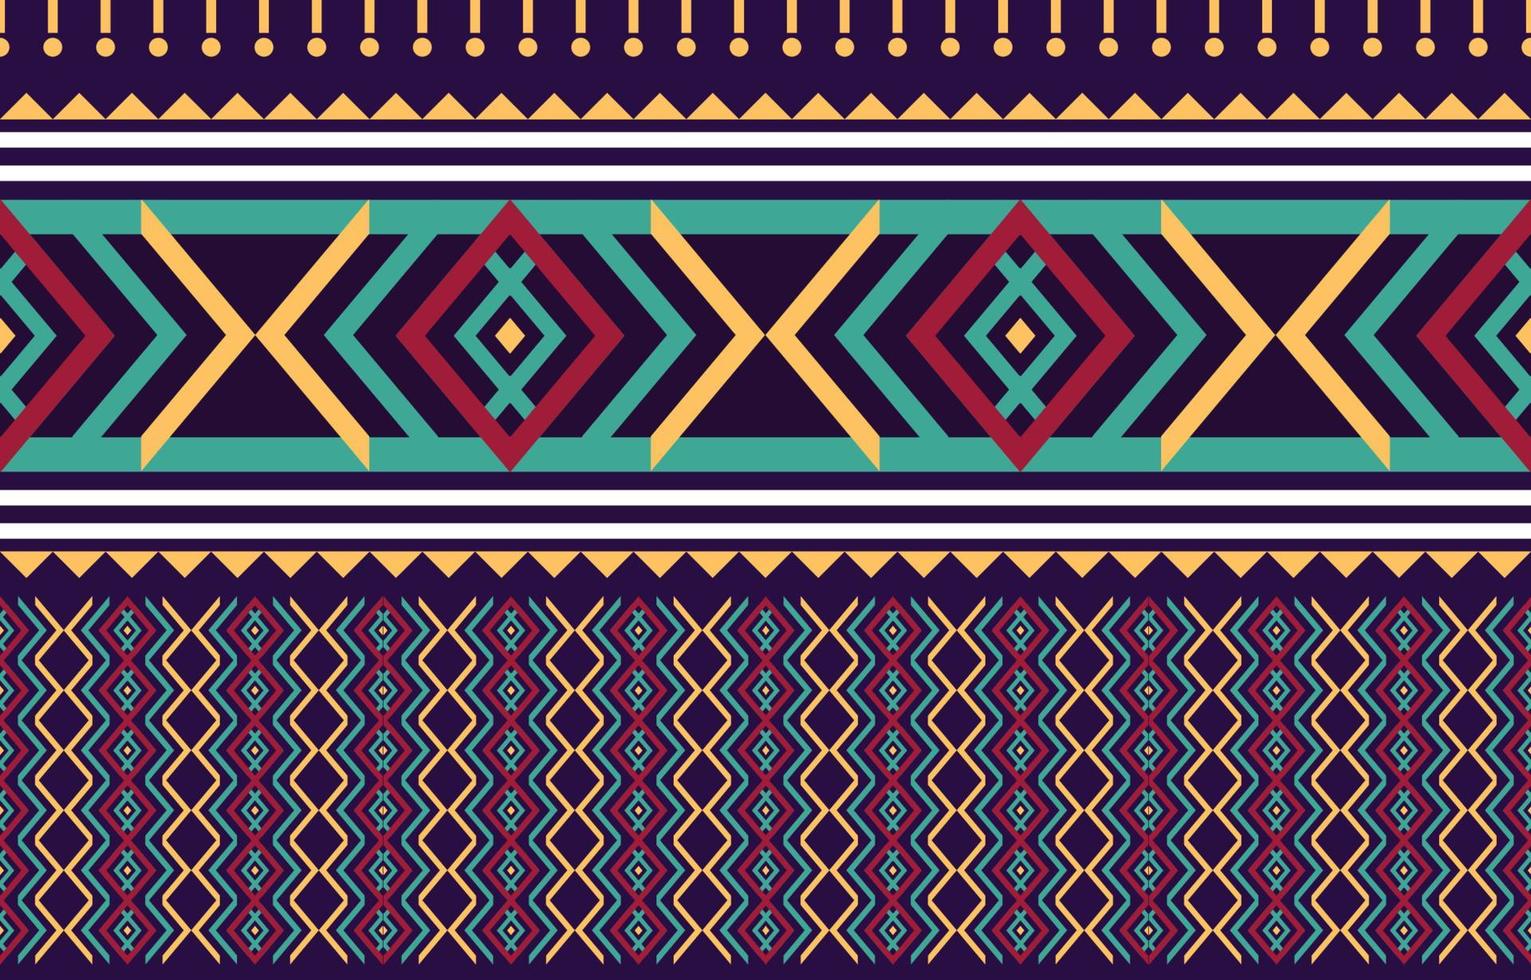 meetkundig etnisch oosters ikat naadloos patroon traditioneel ontwerp voor achtergrond,tapijt,behang,kleding,inwikkeling,batik,stof illustratie. borduurwerk stijl. vector